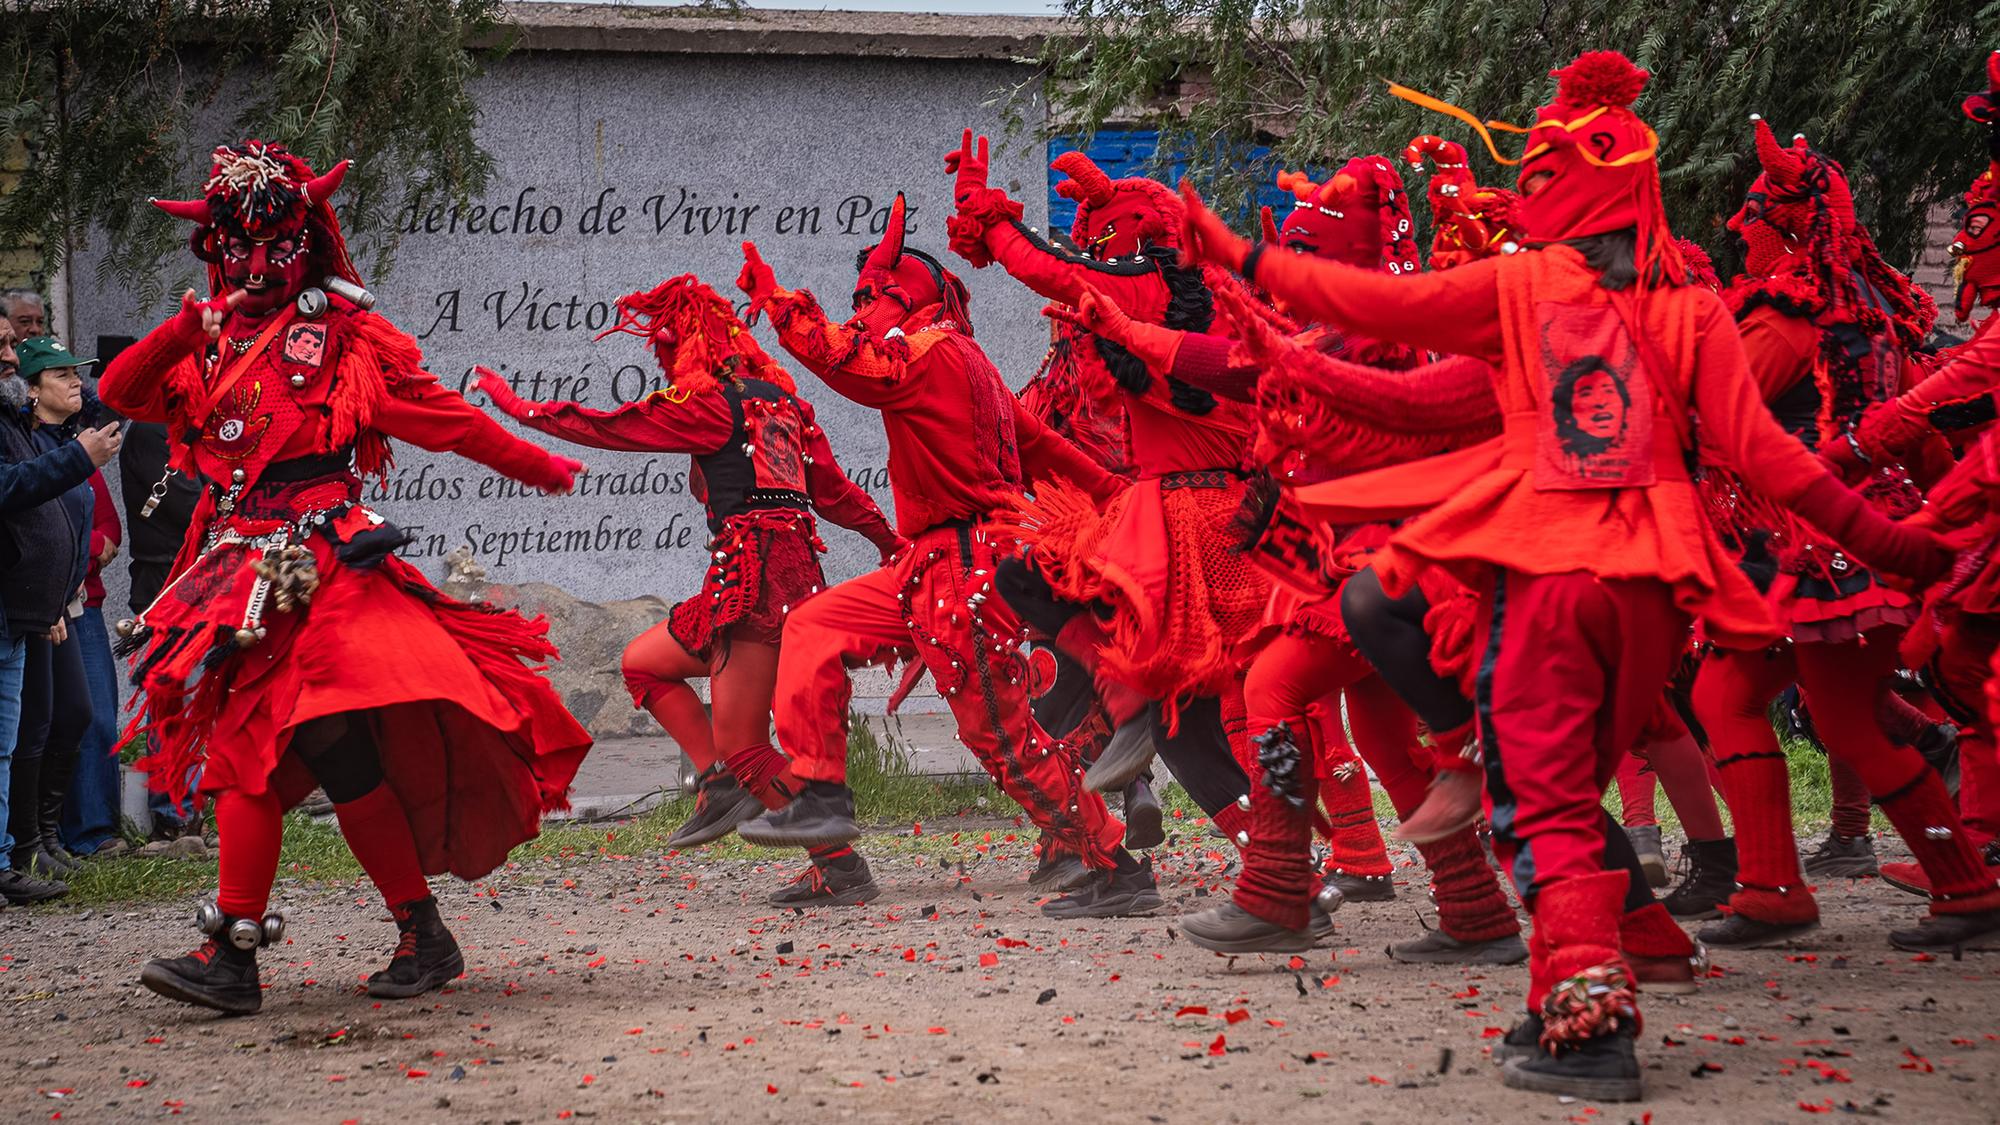 El 2 de septiembre, los Diablos Rojos bailaron en el lugar donde fueron hallados sin vida Víctor Jara y Littré Quiroga, convertido en un lugar de homenaje y memoria.